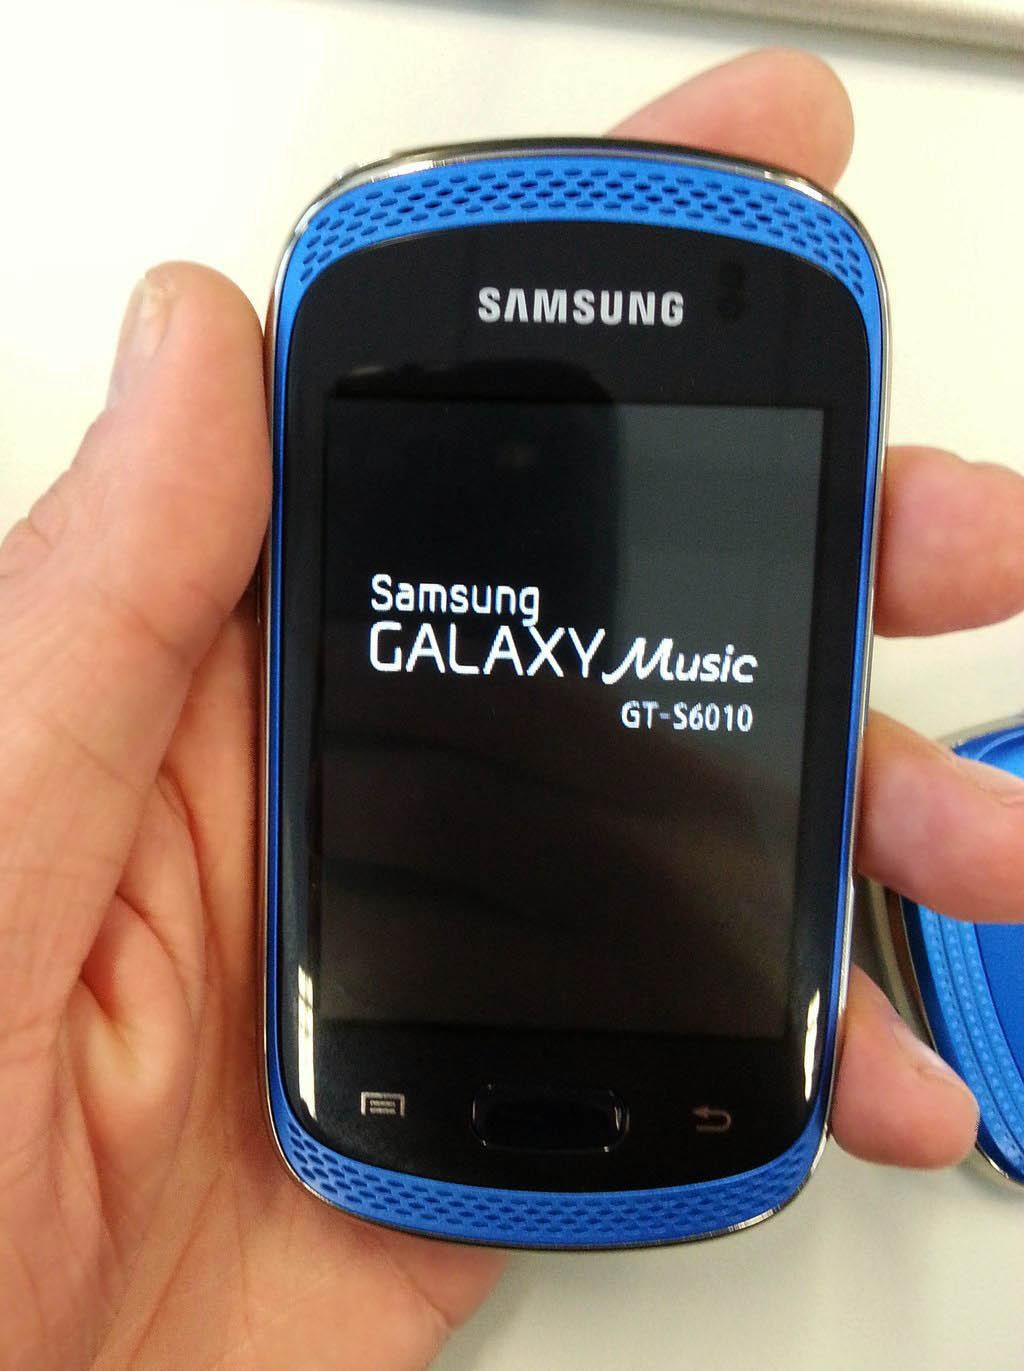 http://allaboutsamsung.de/wp-content/uploads/2012/10/Samsung_Galaxy_Music.jpg